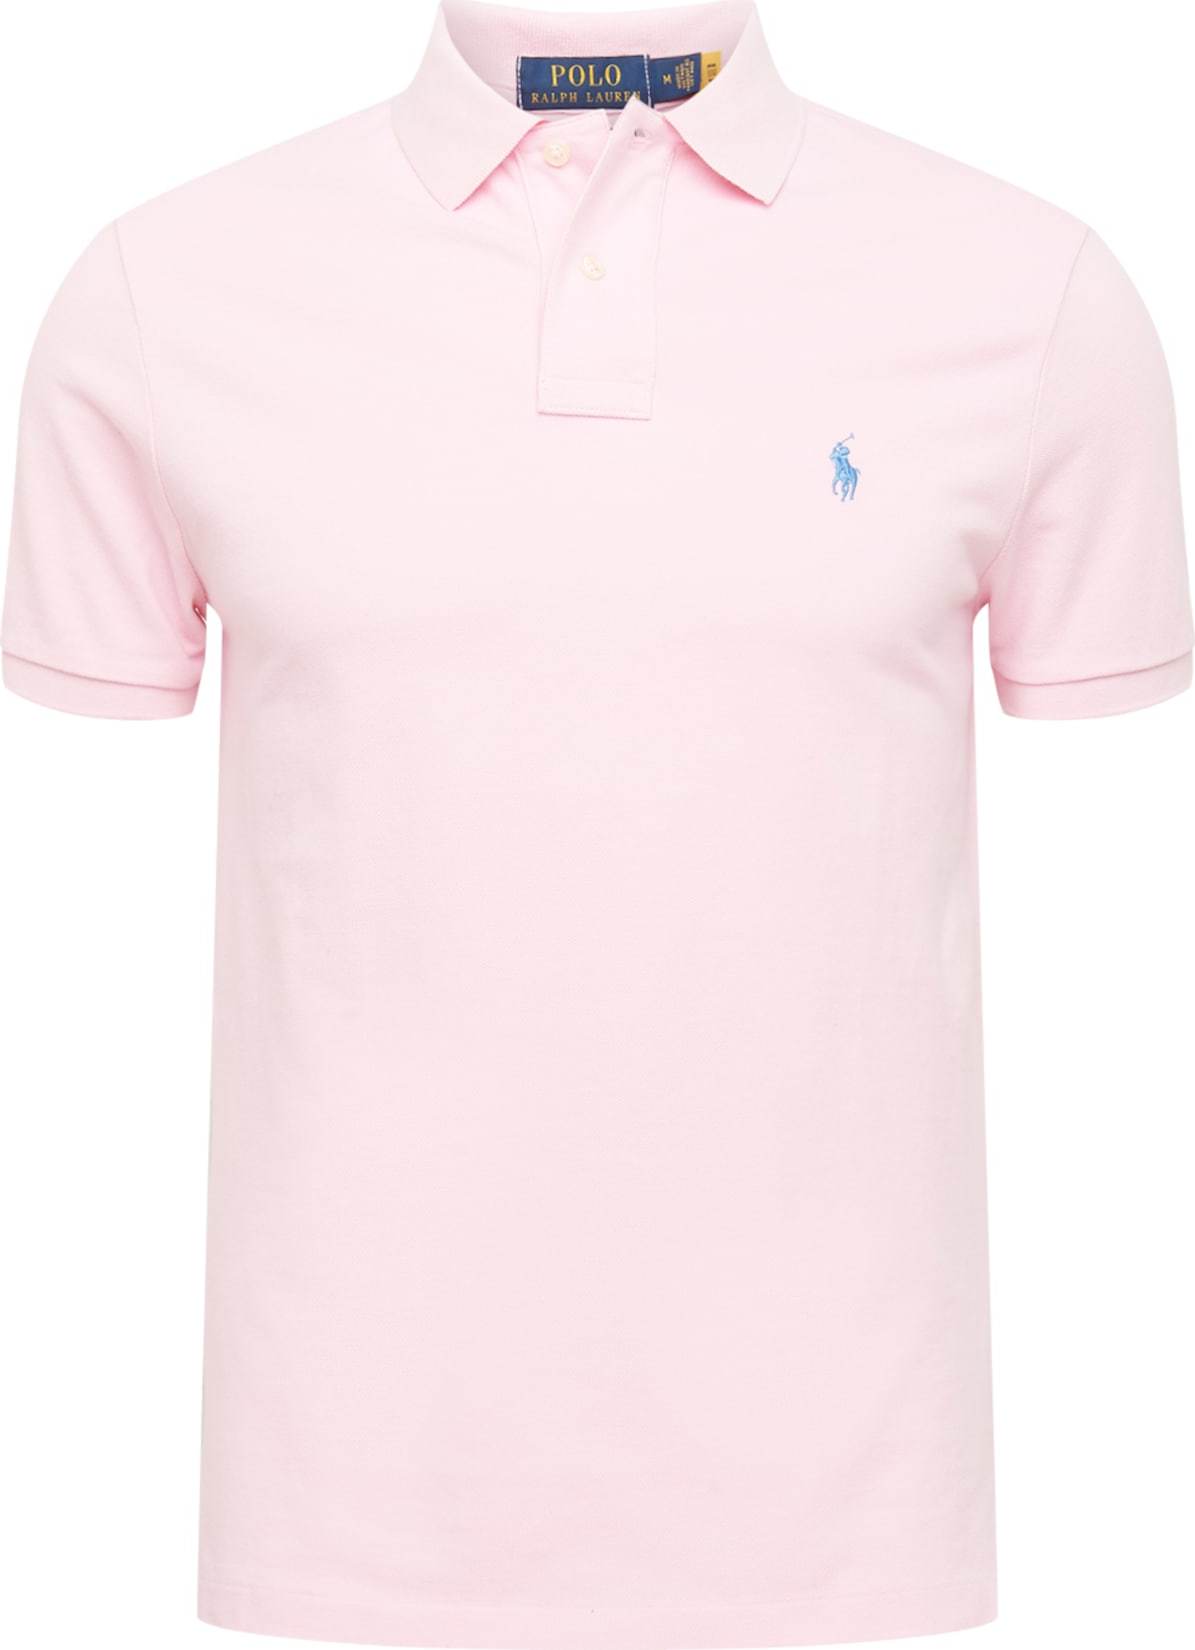 Tričko Polo Ralph Lauren nebeská modř / růžová